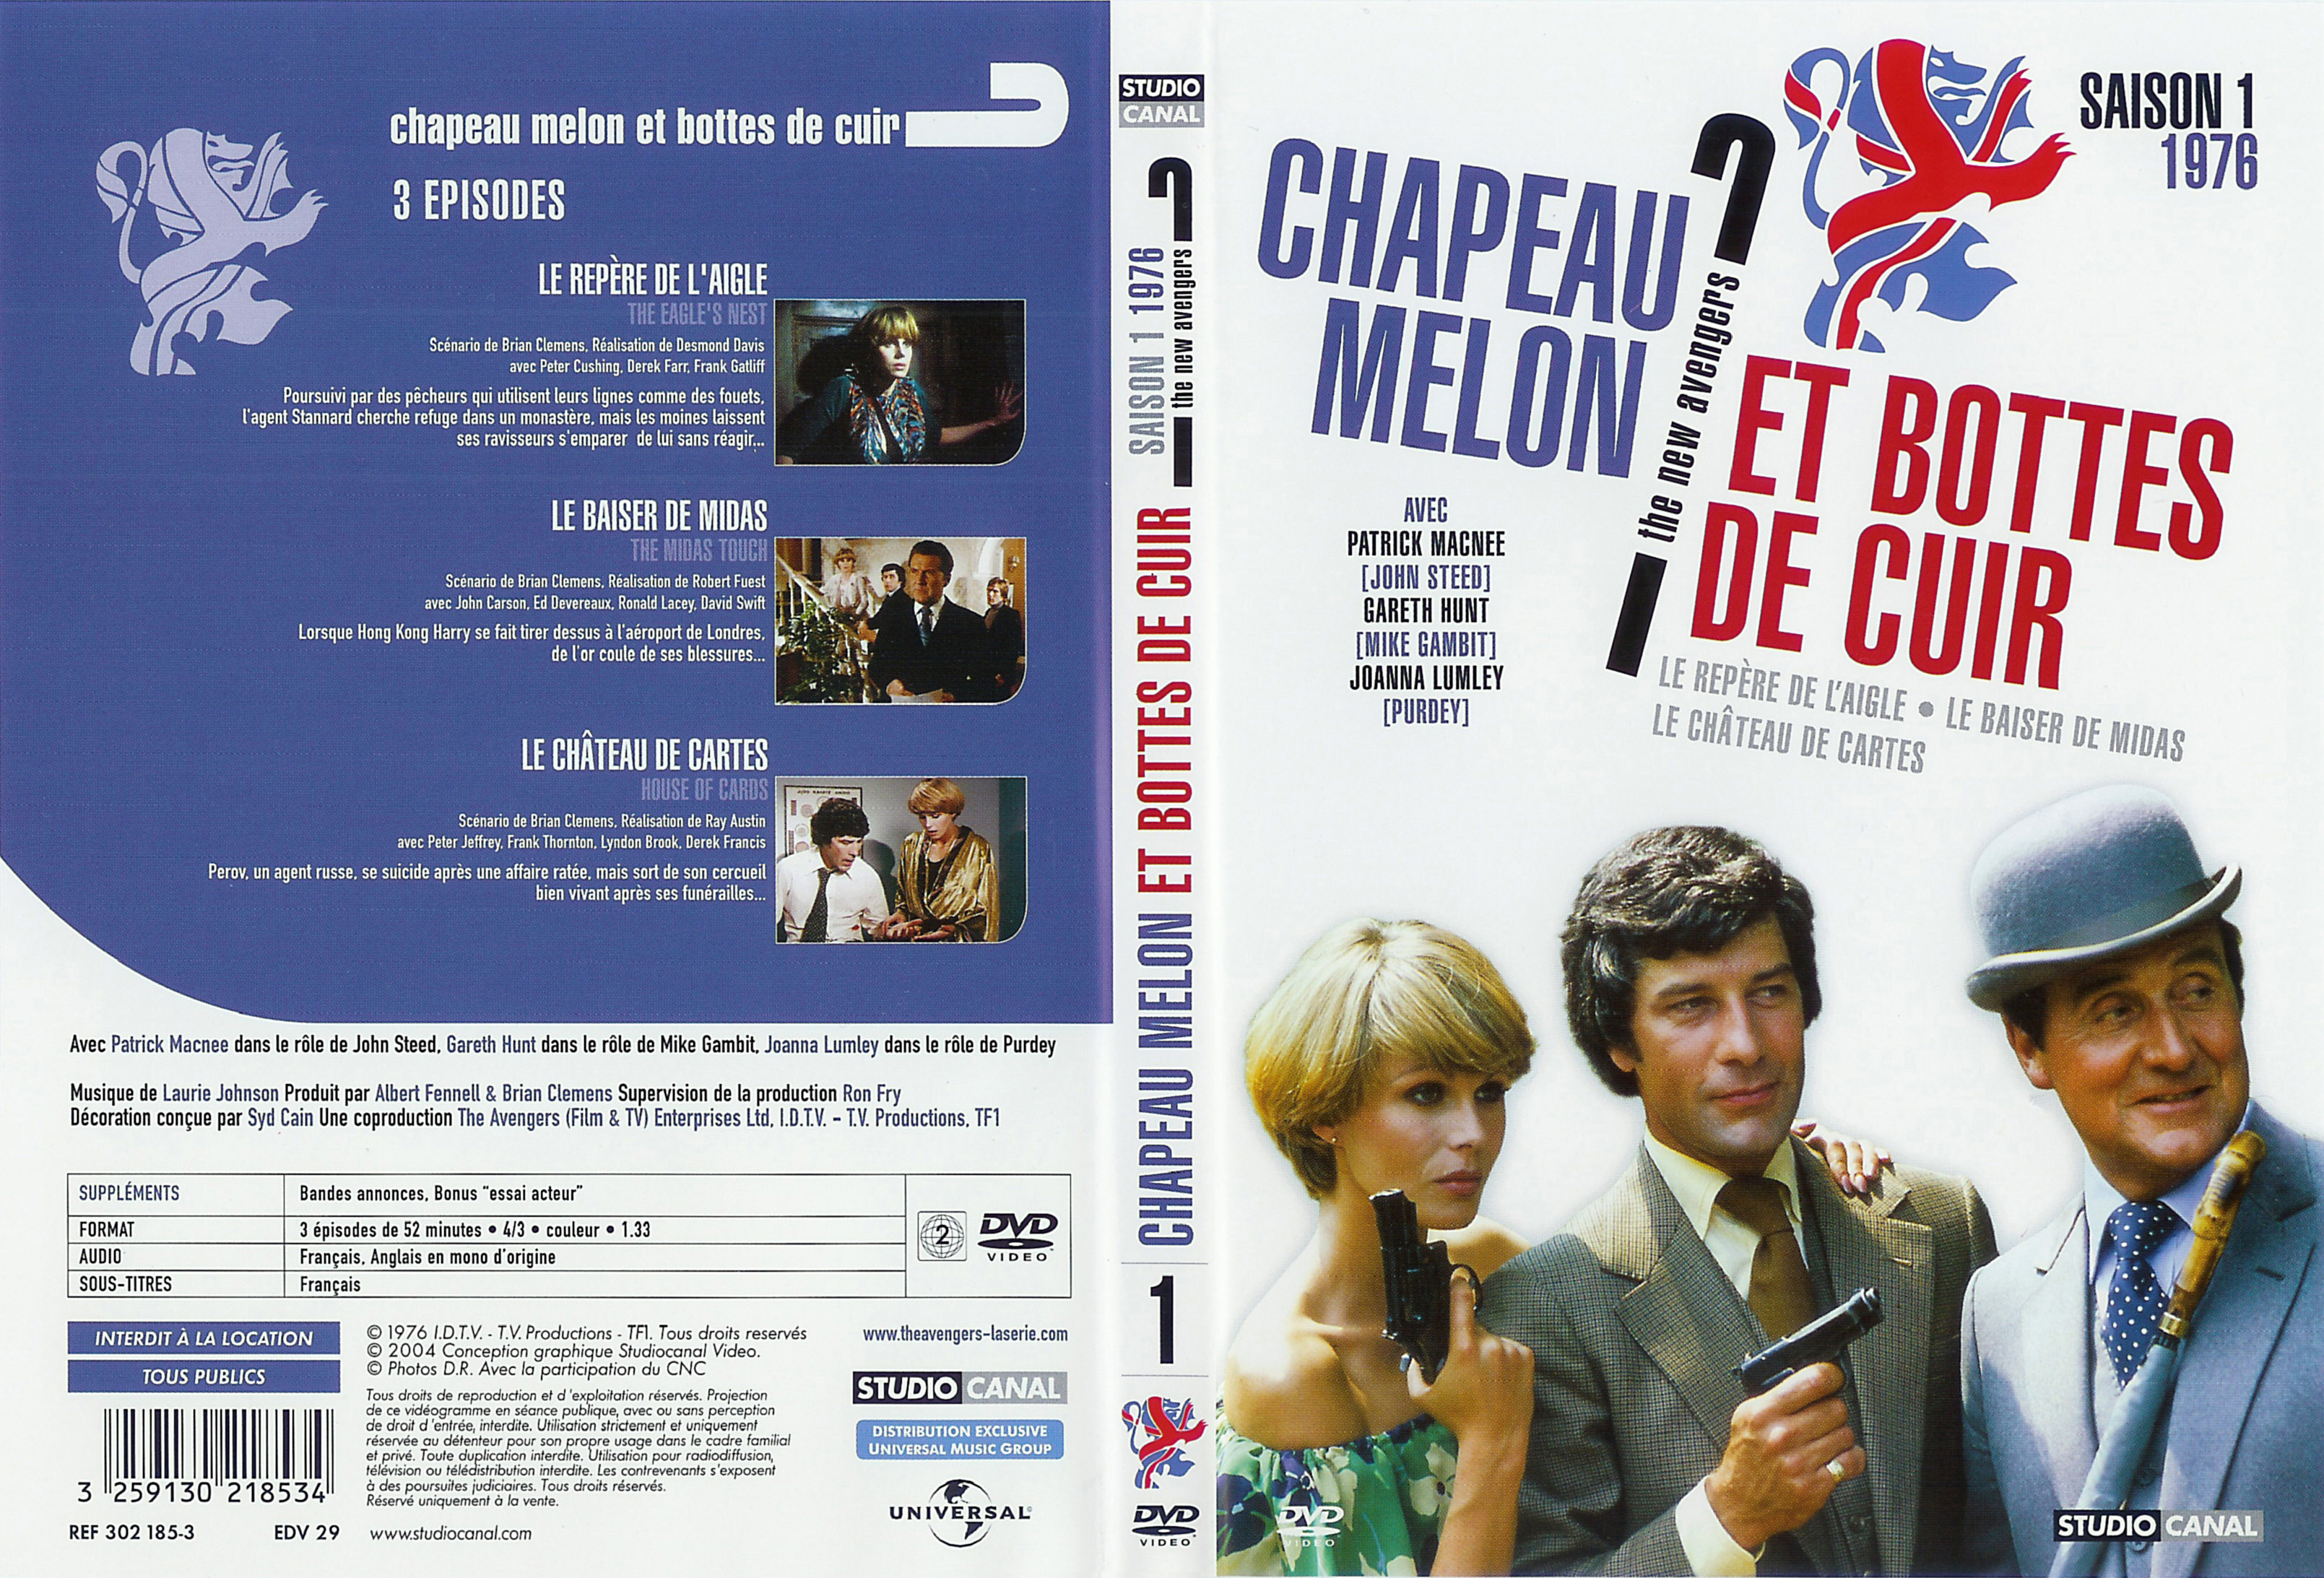 Jaquette DVD Chapeau melon et bottes de cuir 1976 vol 1